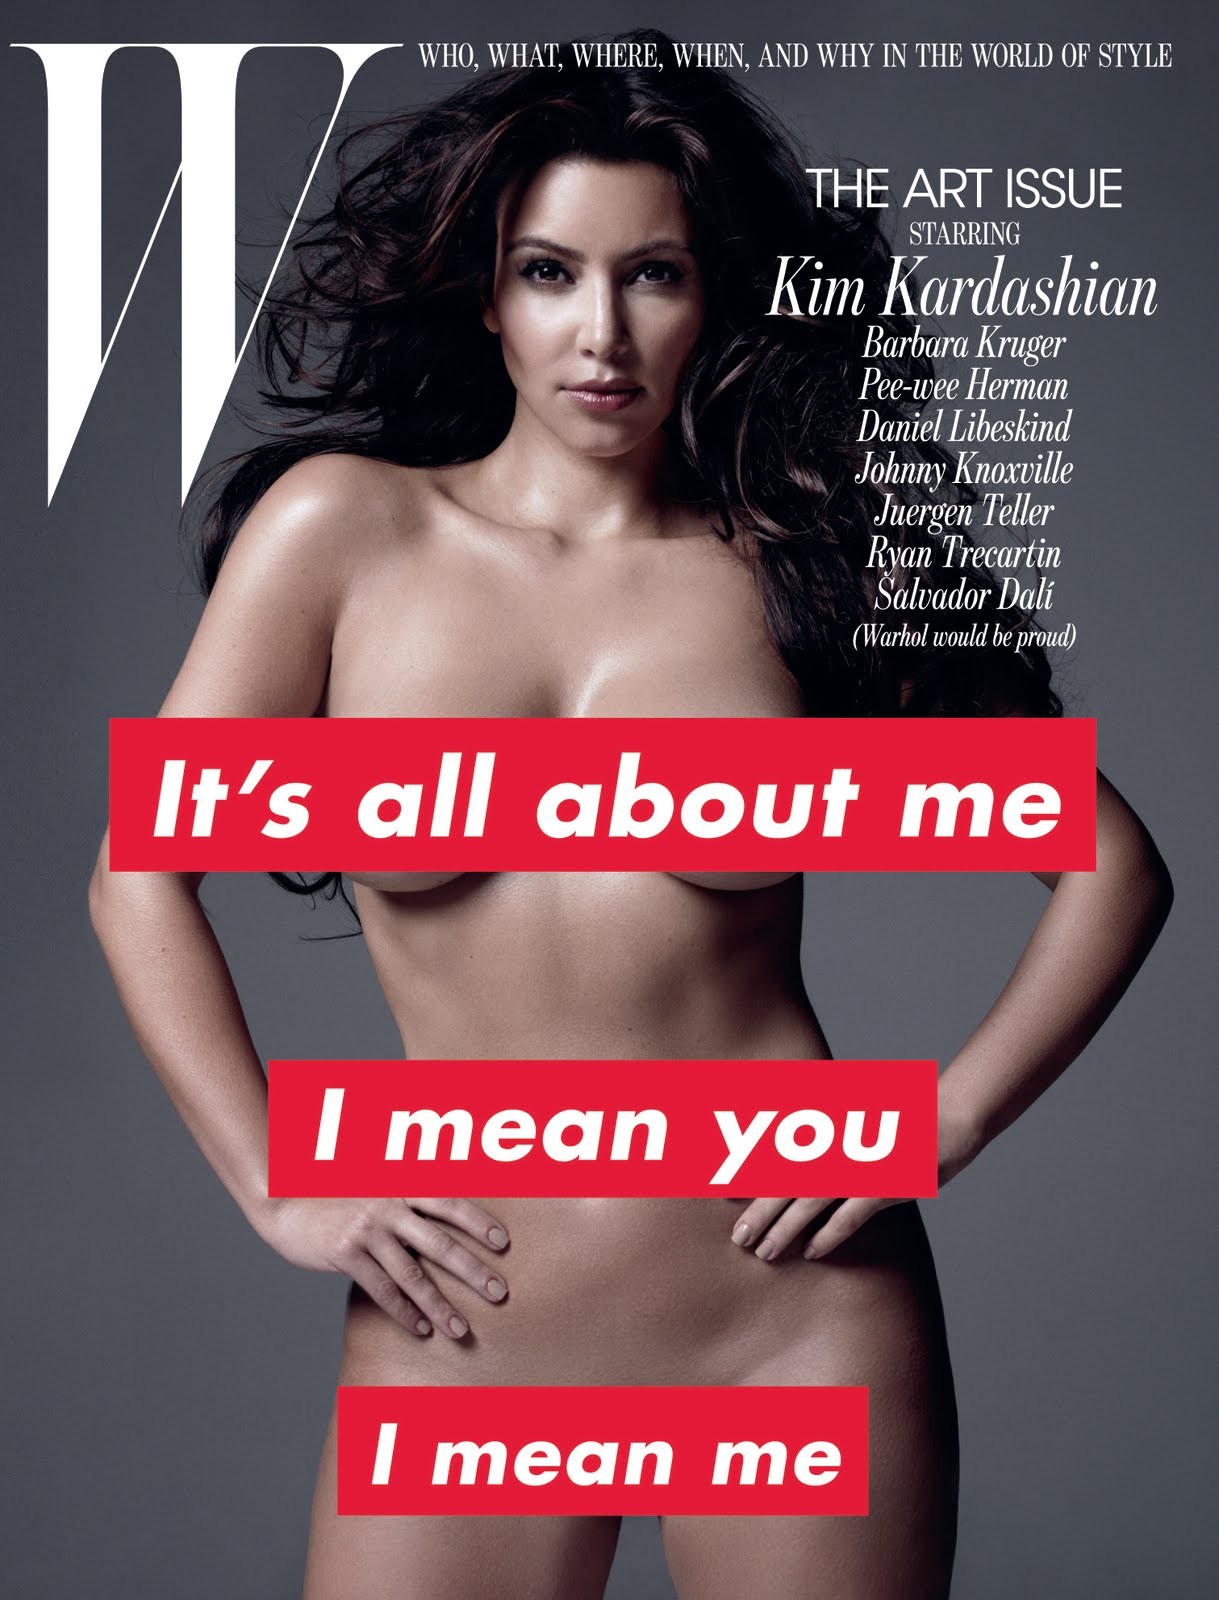 Kim Kardashian na revista 'W' de novembro de 2010. (Foto: Reprodução)